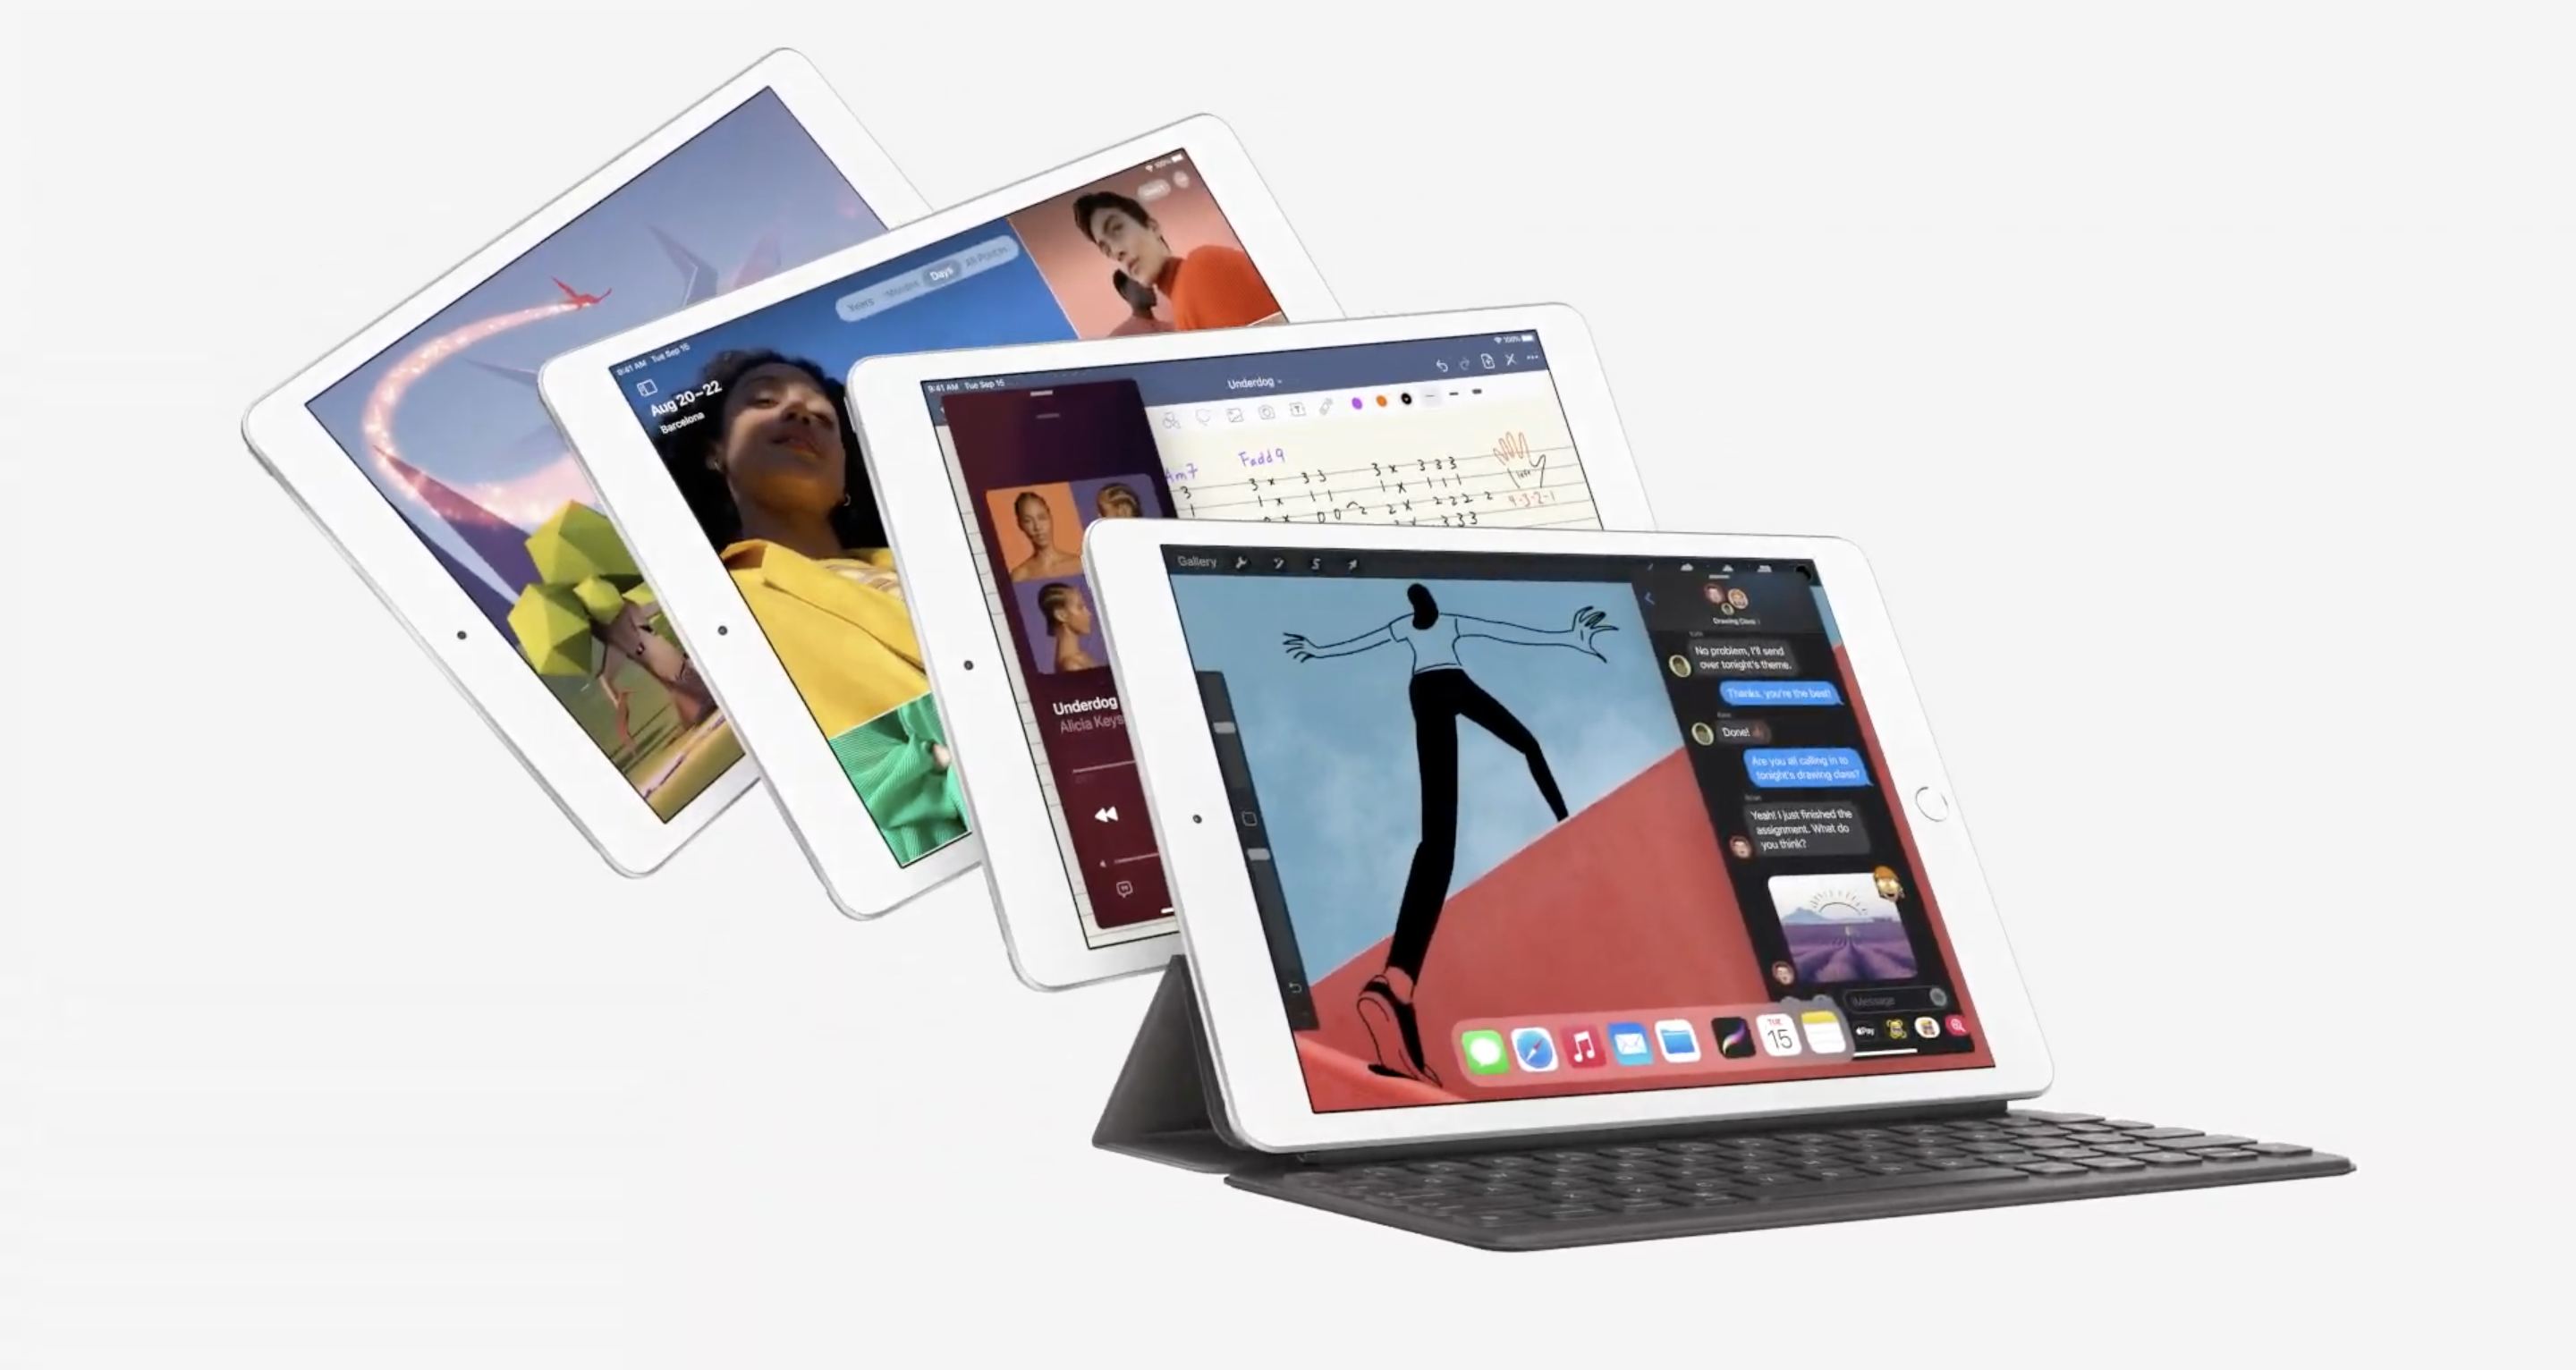 Nowe iPady zaprezentowane! Air zachwyca wyglądem, ale czym wersja podstawowa?